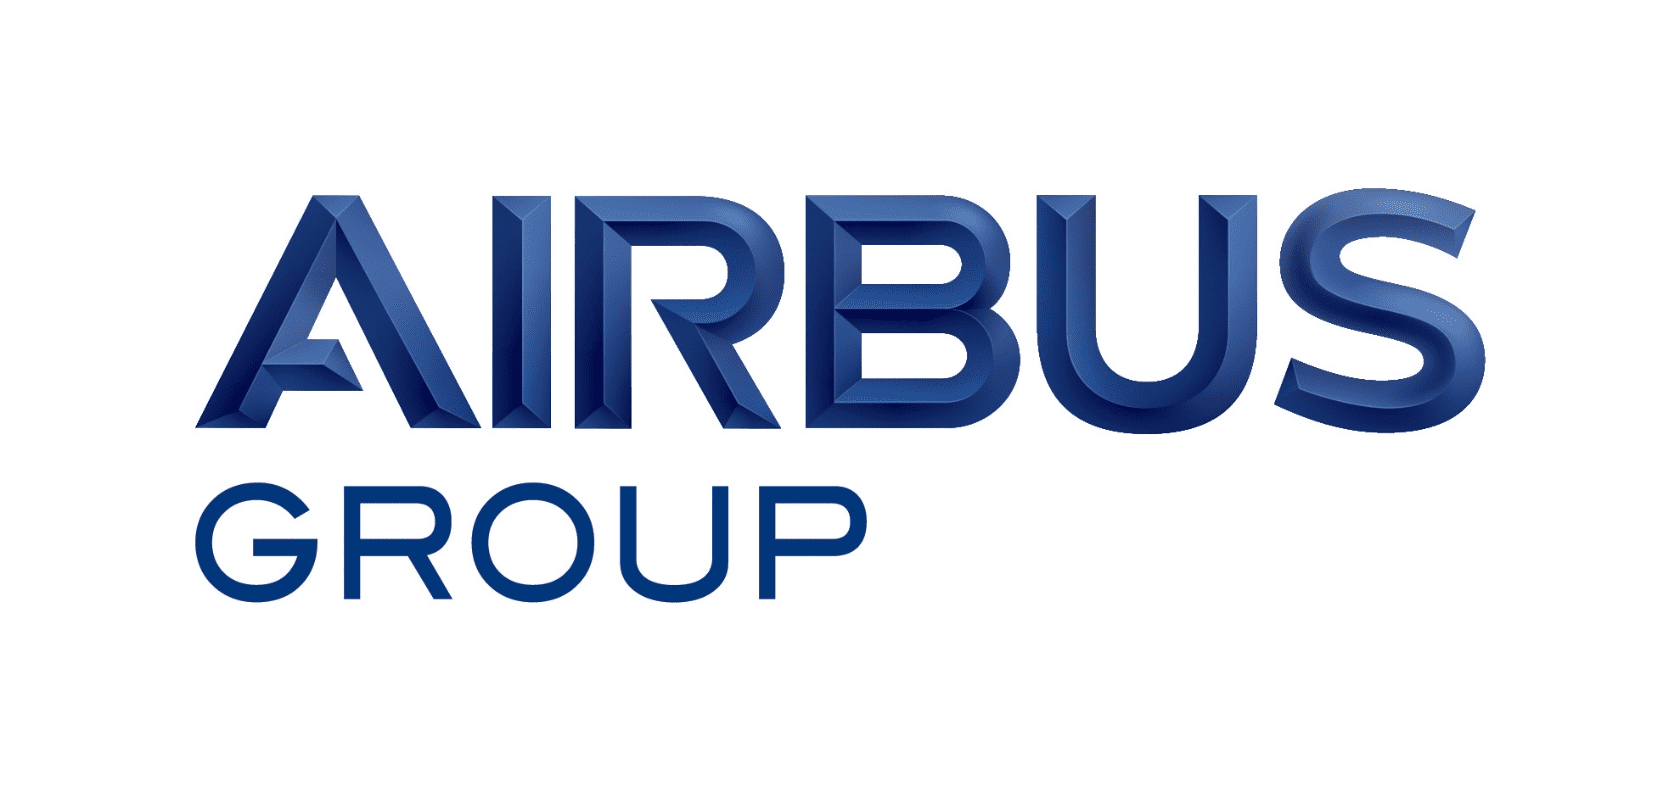 Grupo Airbus: Fabrico de aeronaves - Mobilidade aérea.